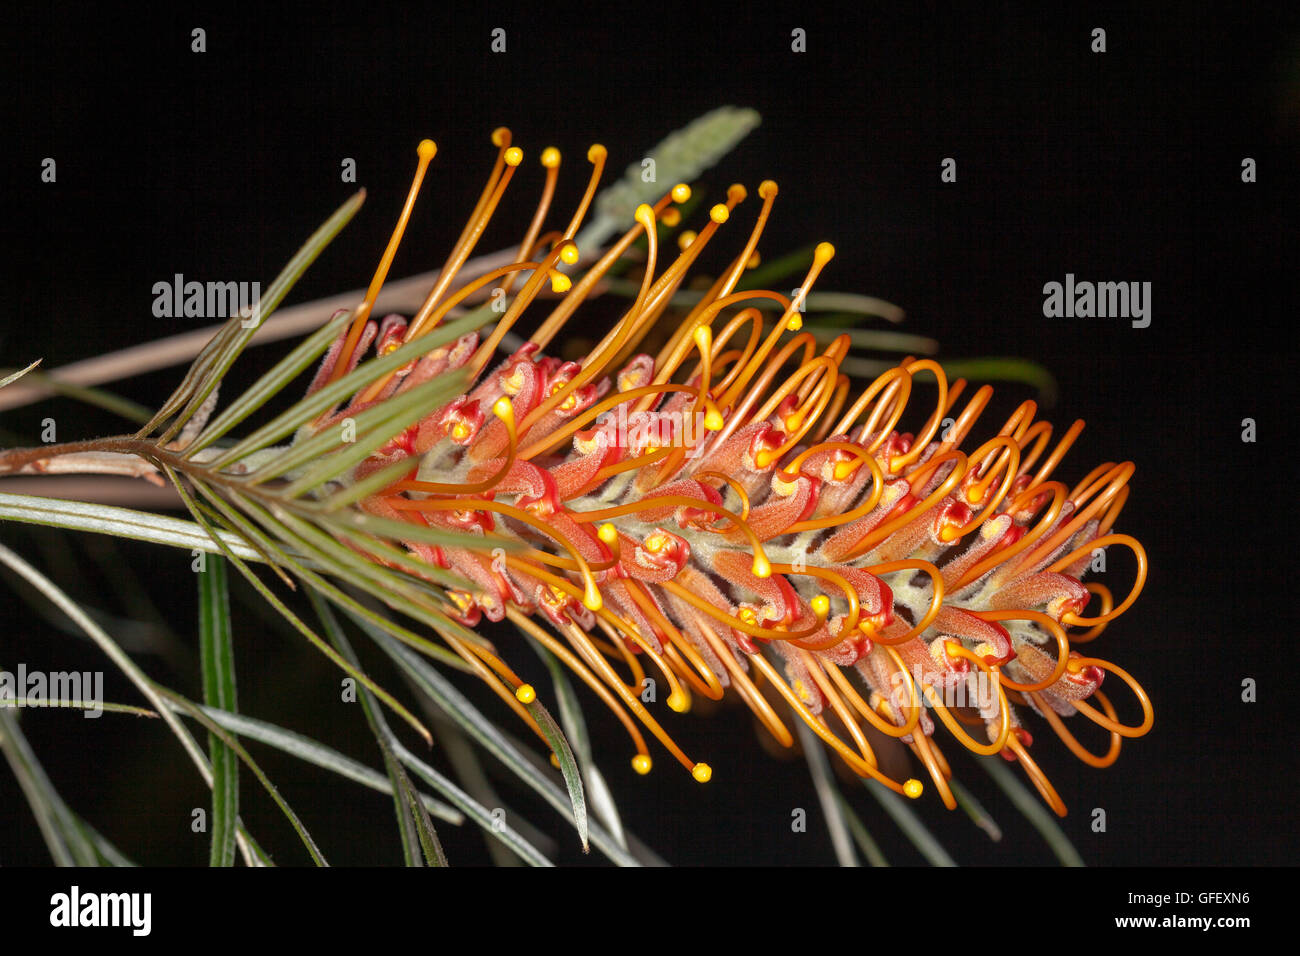 Lumineux spectaculaires fleurs orange profond & feuilles vert clair de Grevillea arbuste indigène australienne Barbara miel sur fond sombre Banque D'Images